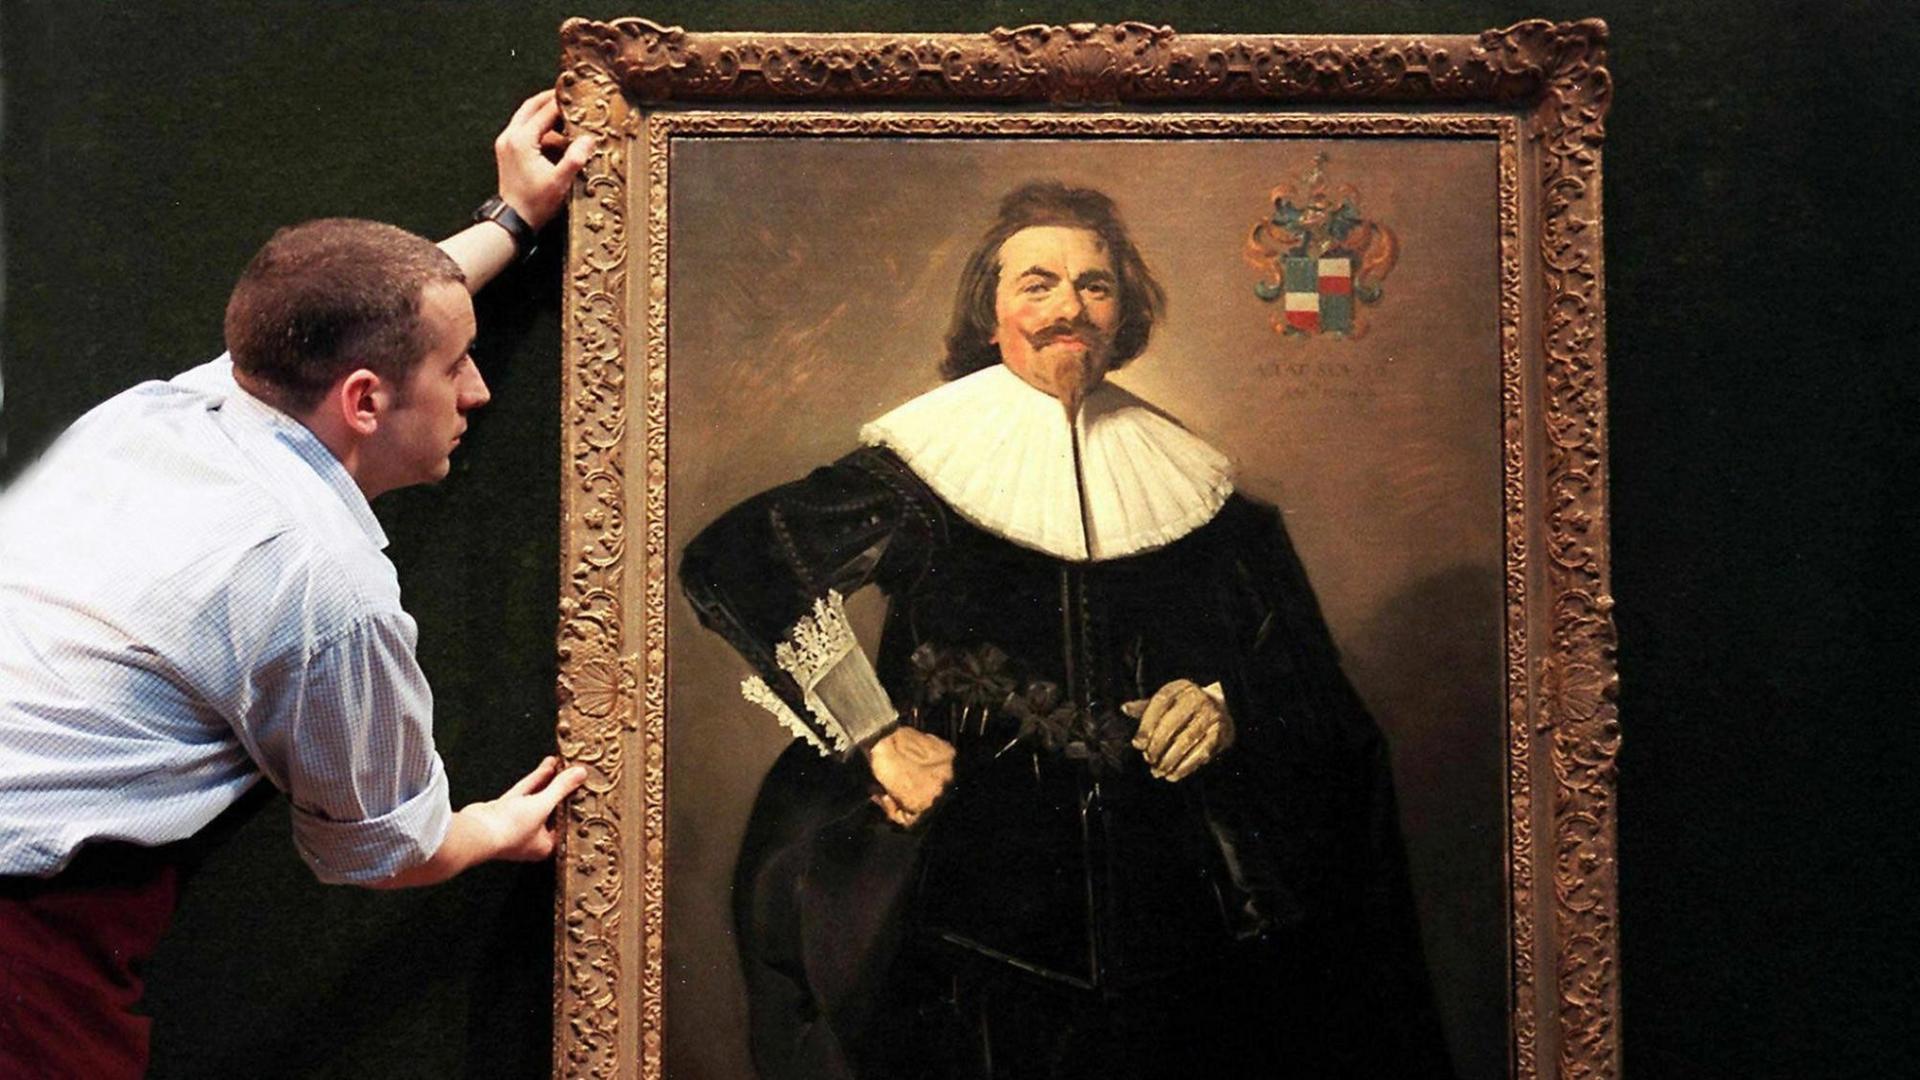 Das Gemälde von Franz Hals mit dem Porträt von Tieleman Roosterman rückt ein Angestellter des Londoner Auktionshauses Christie's am 12.4. zurecht. Am 8.7.1999 wird die berühmte Kunstsammlung der Brüder Albert und Nathaniel Rothschild versteigert.